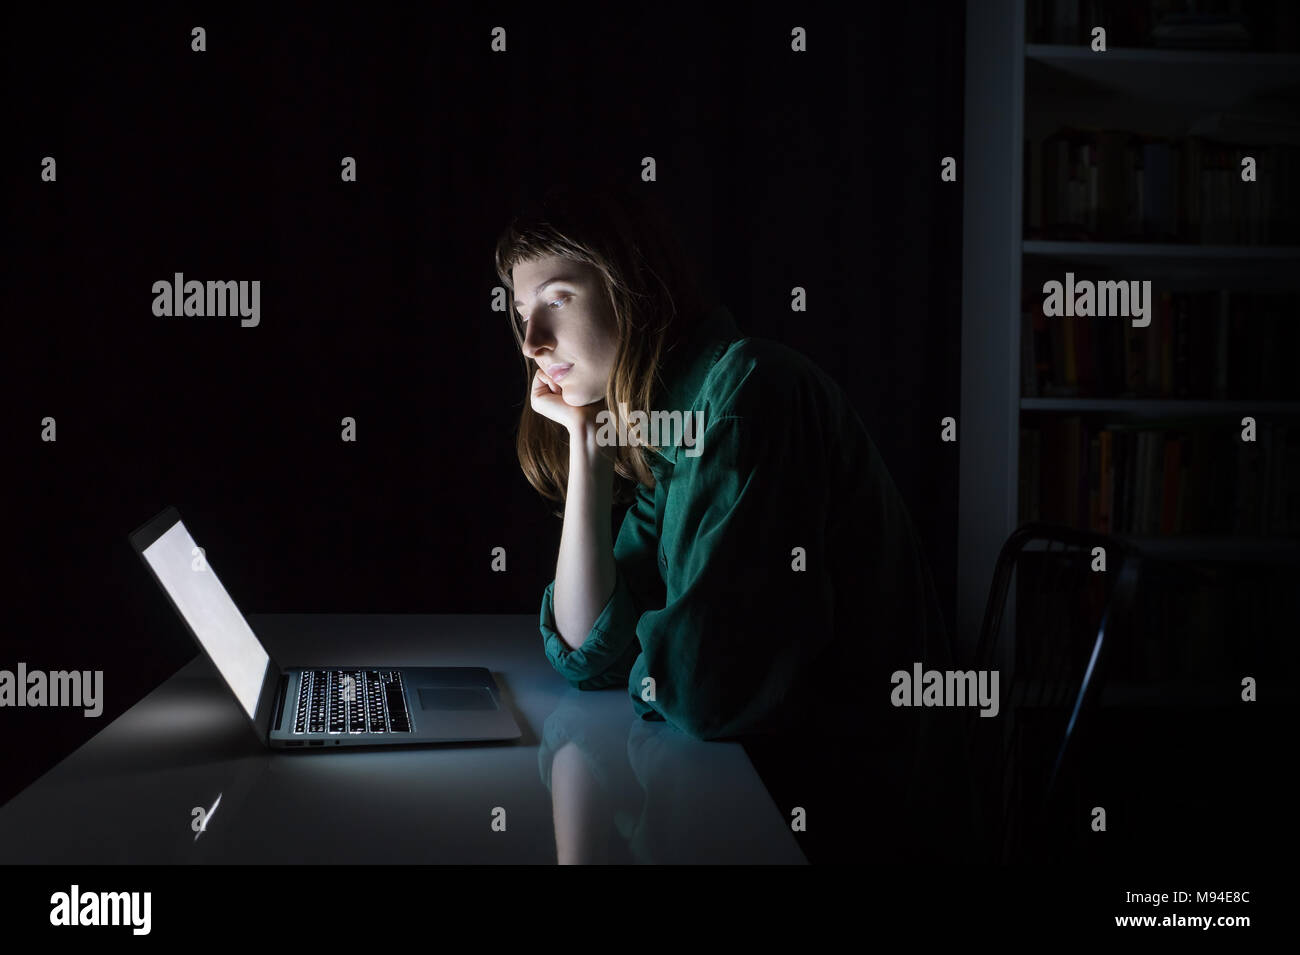 Woman at laptop computer tard dans la soirée s'ennuie ou lecture. Portrait de jeune femme étudiant ou travailleur assis en face de l'écran de l'ordinateur pendant la nuit Banque D'Images